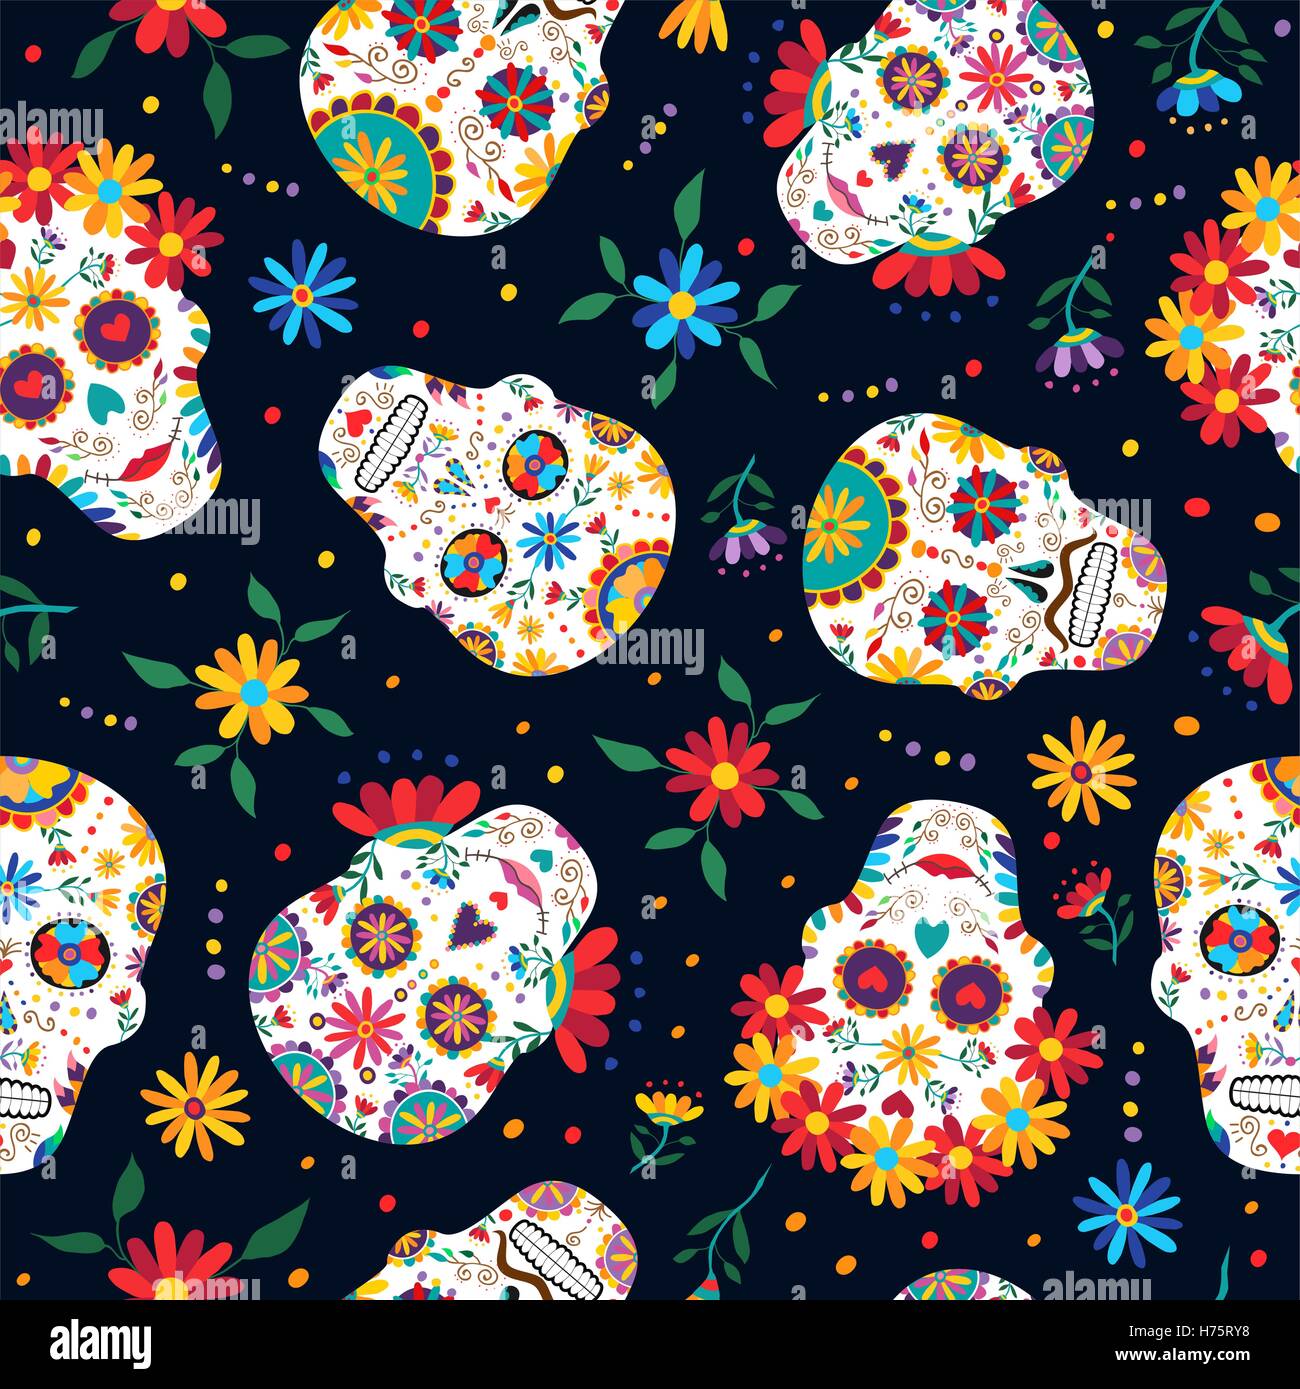 Il giorno dei morti seamless pattern con tradizionale messicana teschio di zucchero decorazione, fiori colorati e arte. EPS10 vettore. Illustrazione Vettoriale